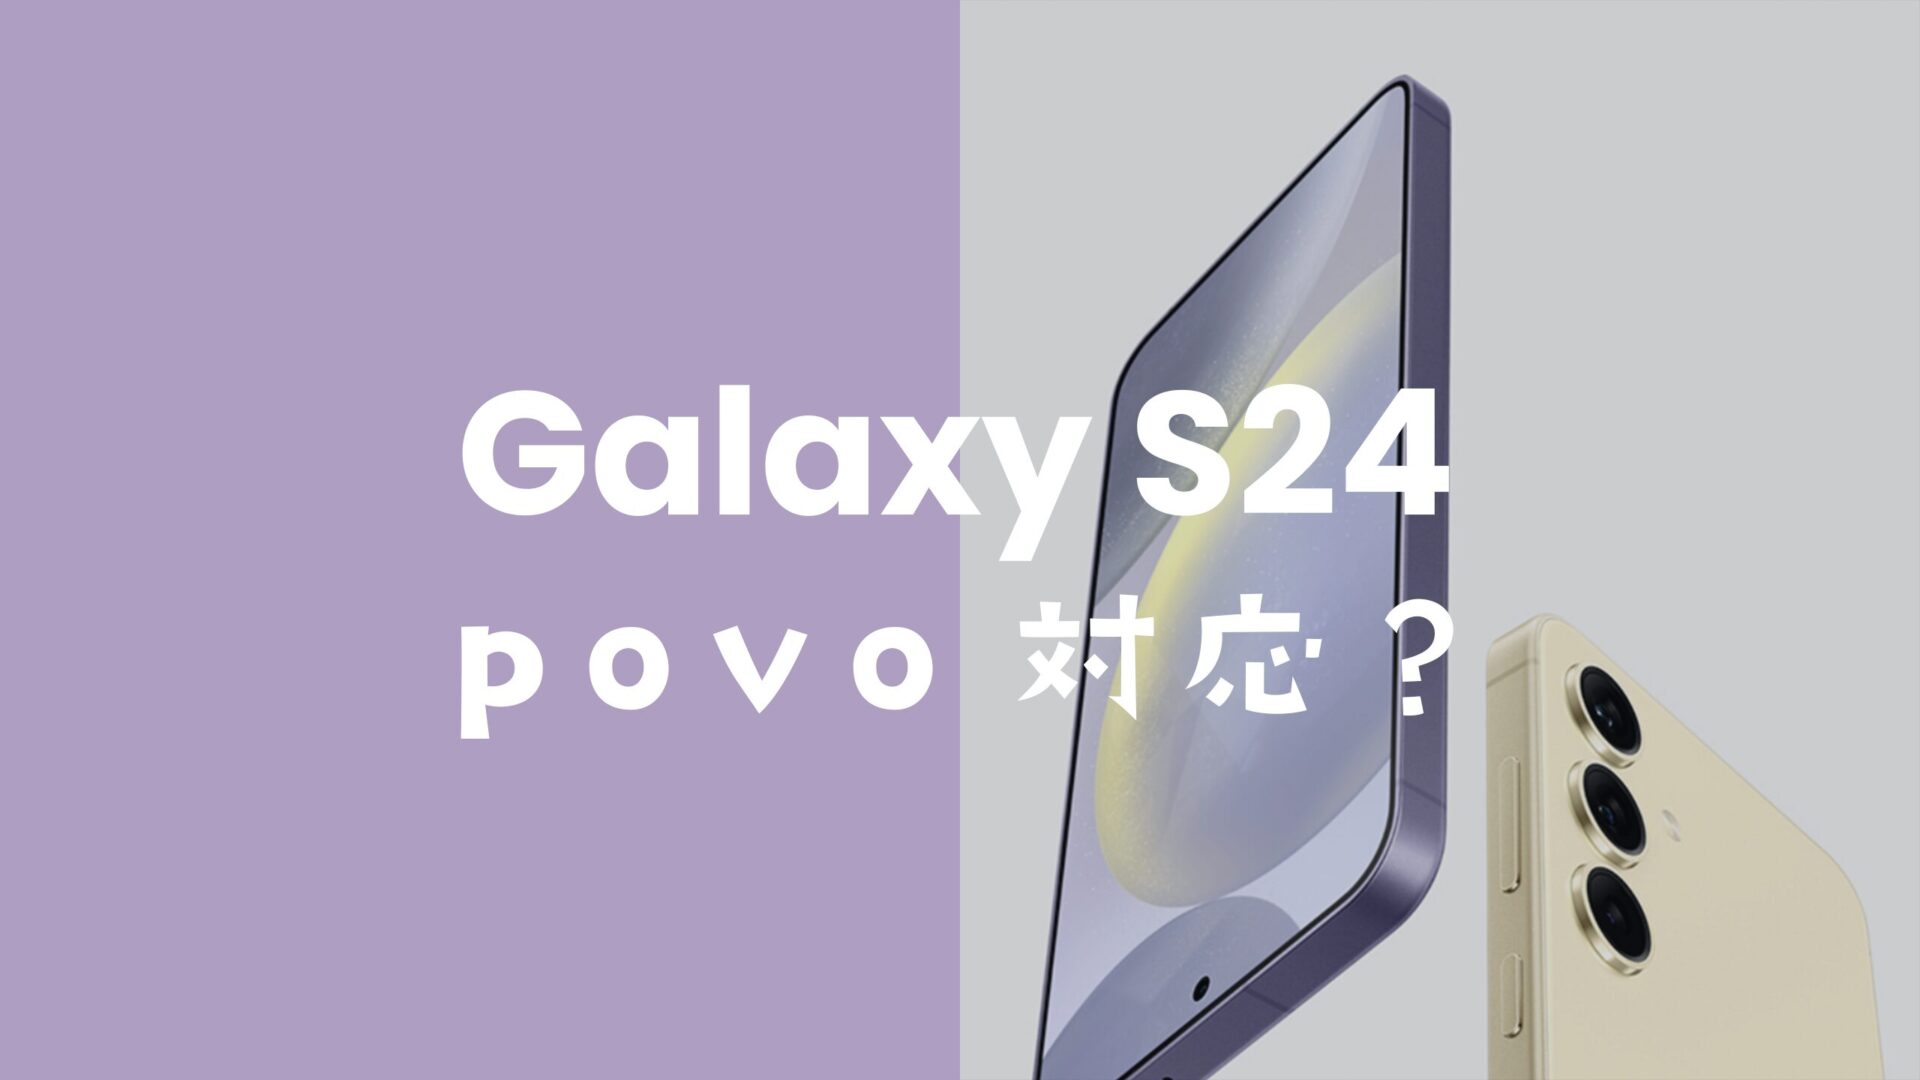 Galaxy(ギャラクシー)S24はpovo2.0/1.0で使える？対応機種なのか解説。のサムネイル画像